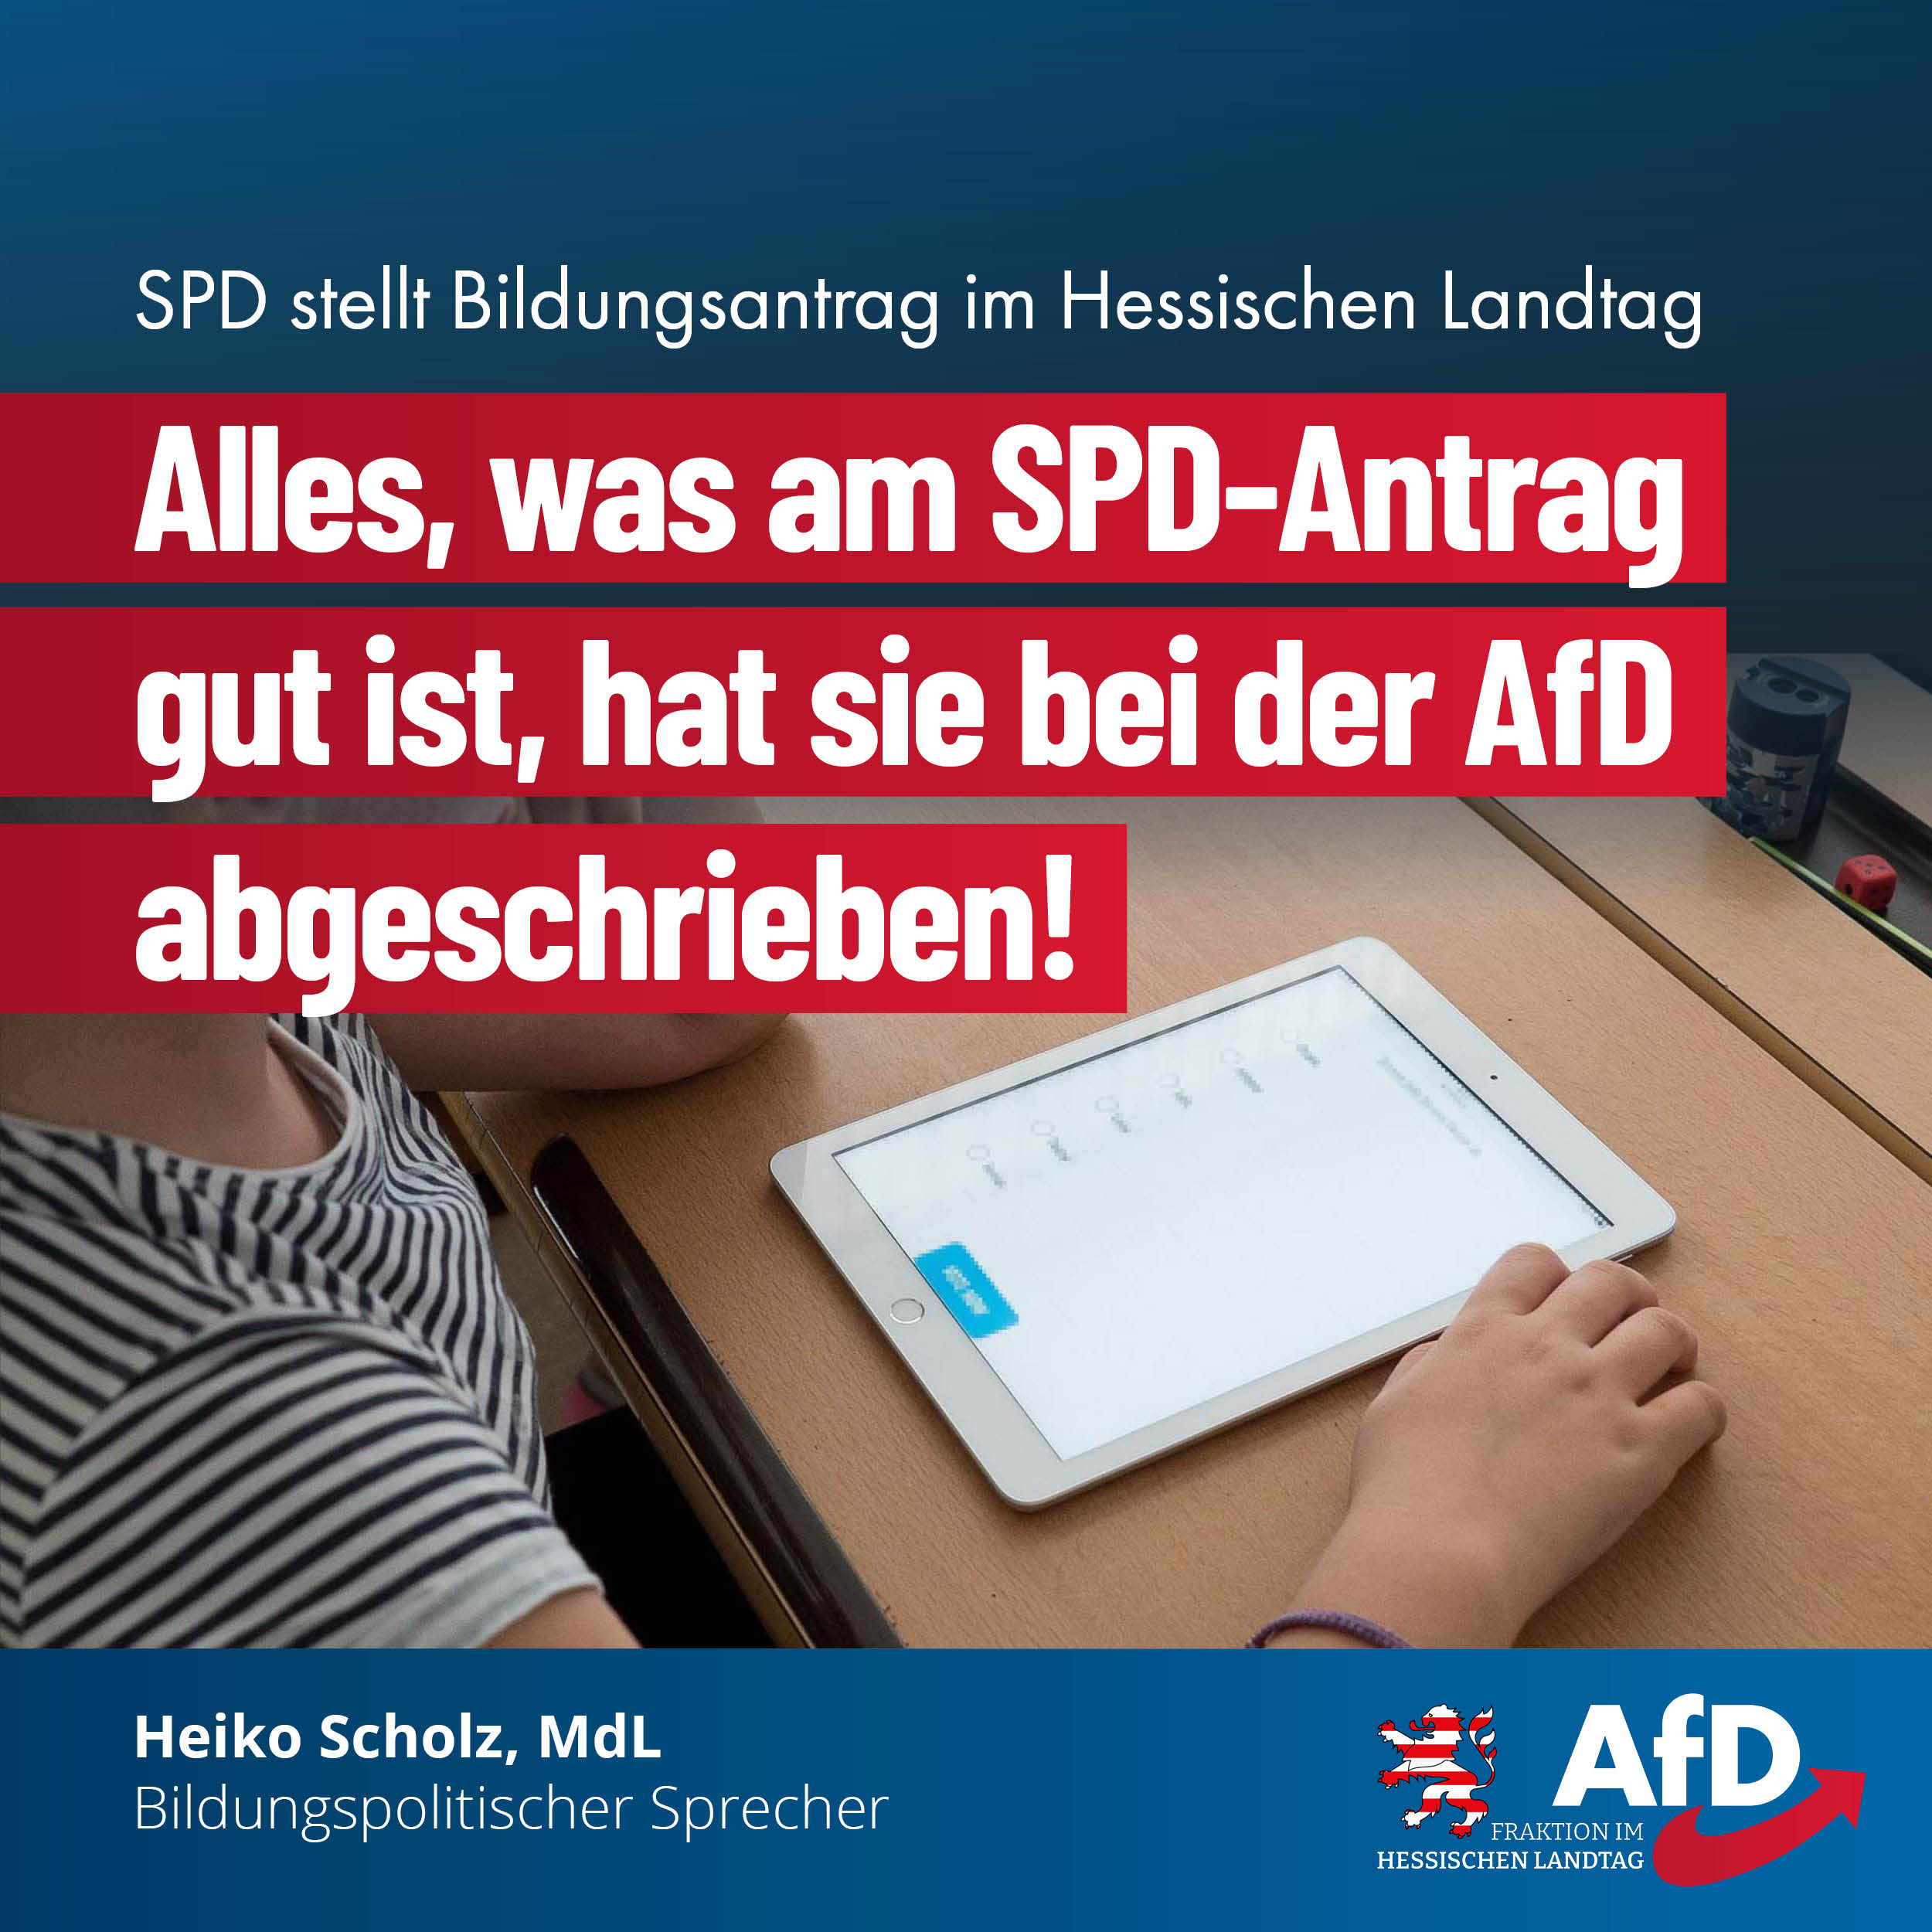 You are currently viewing Alles, was am SPD-Antrag gut ist, hat sie bei der AfD abgeschrieben